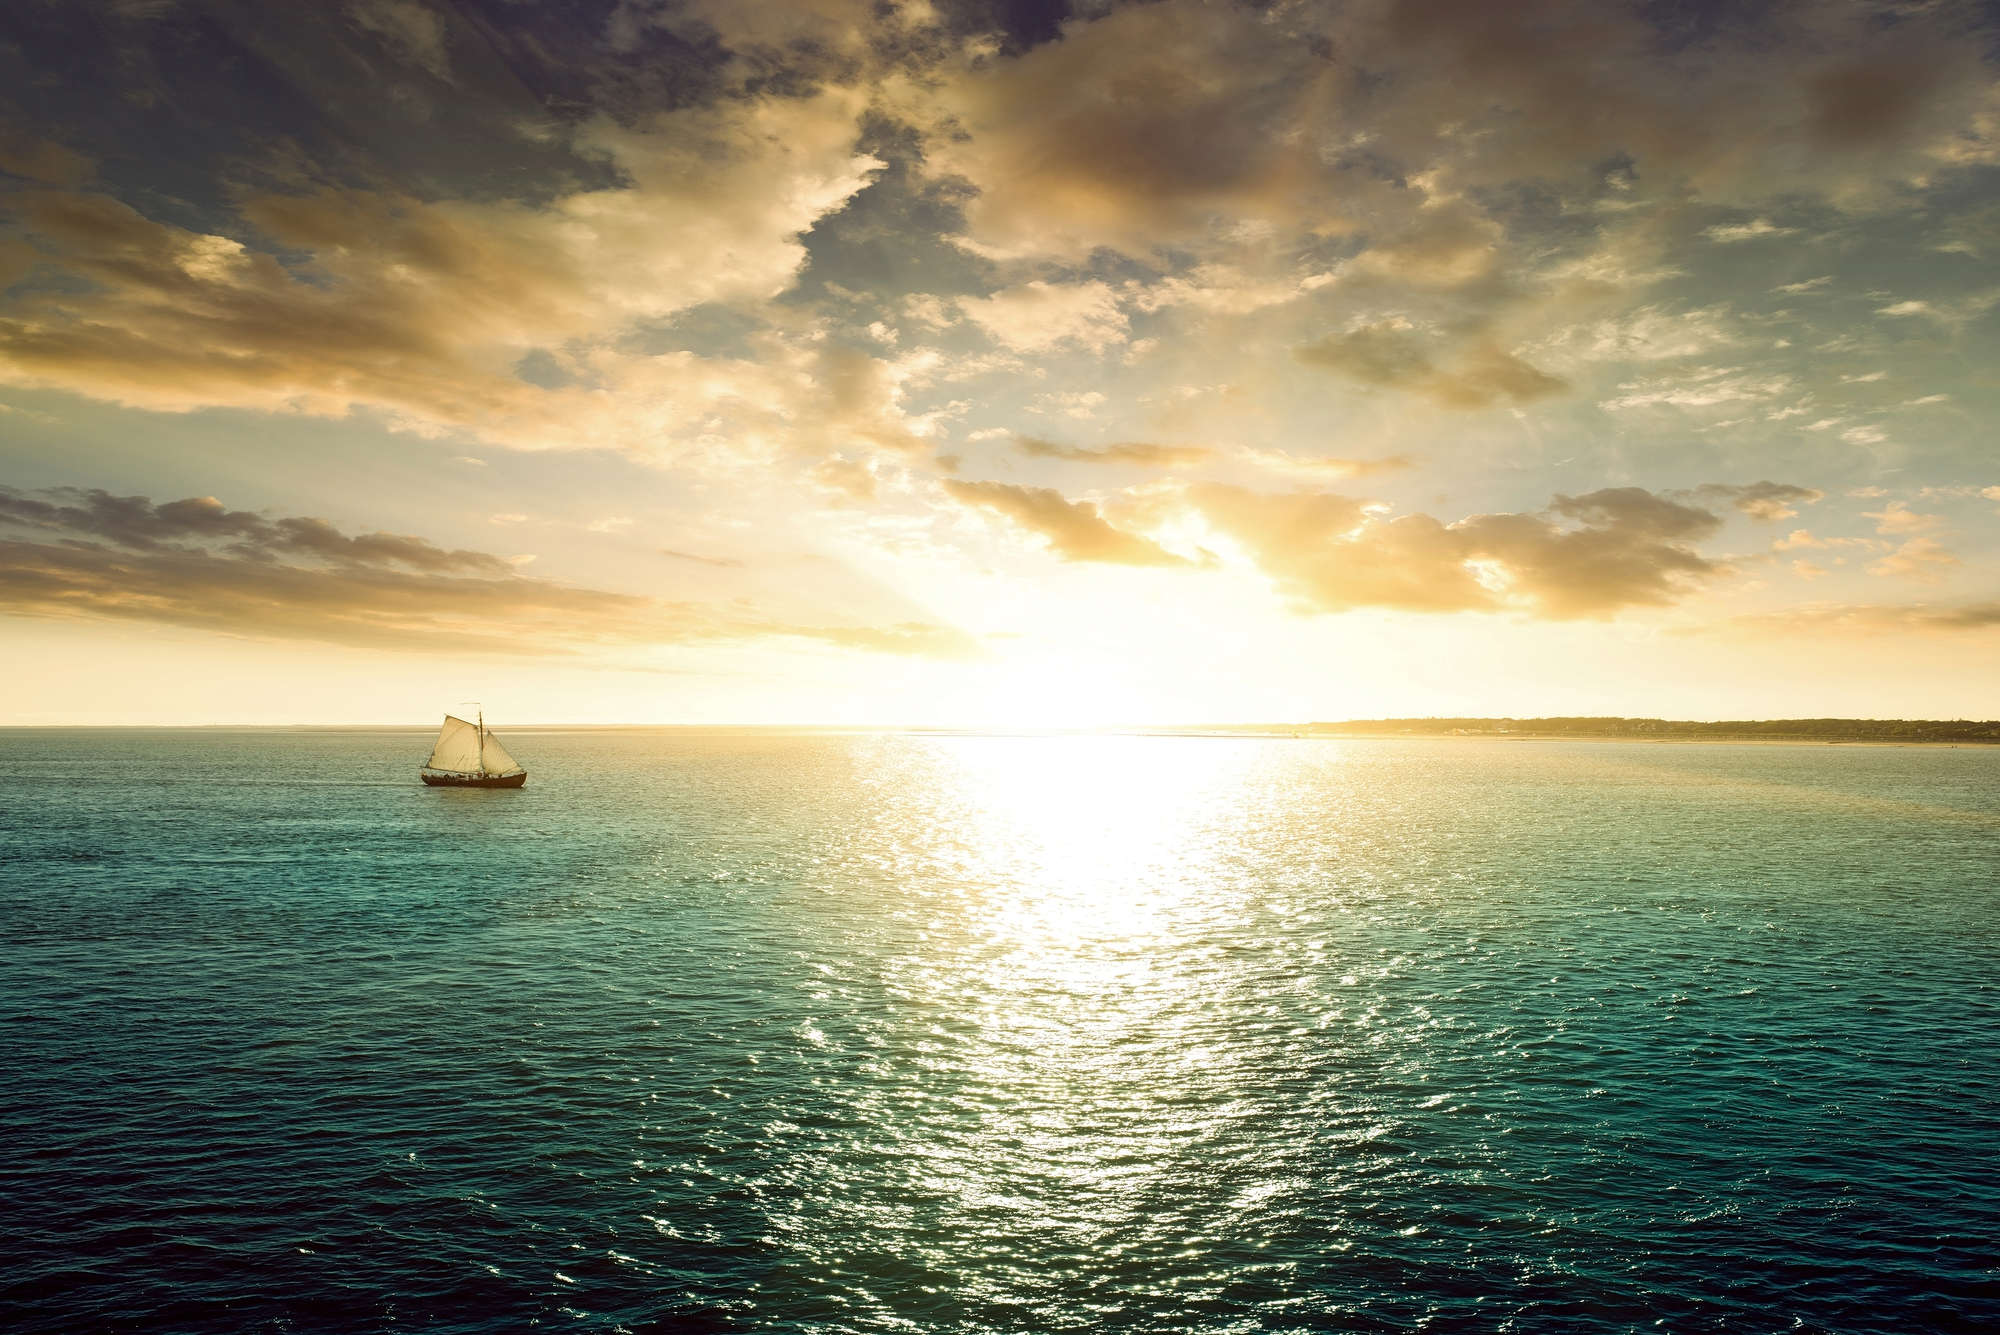             Zee fotobehang zeilboot bij zonsondergang op parelmoer glad vlies
        